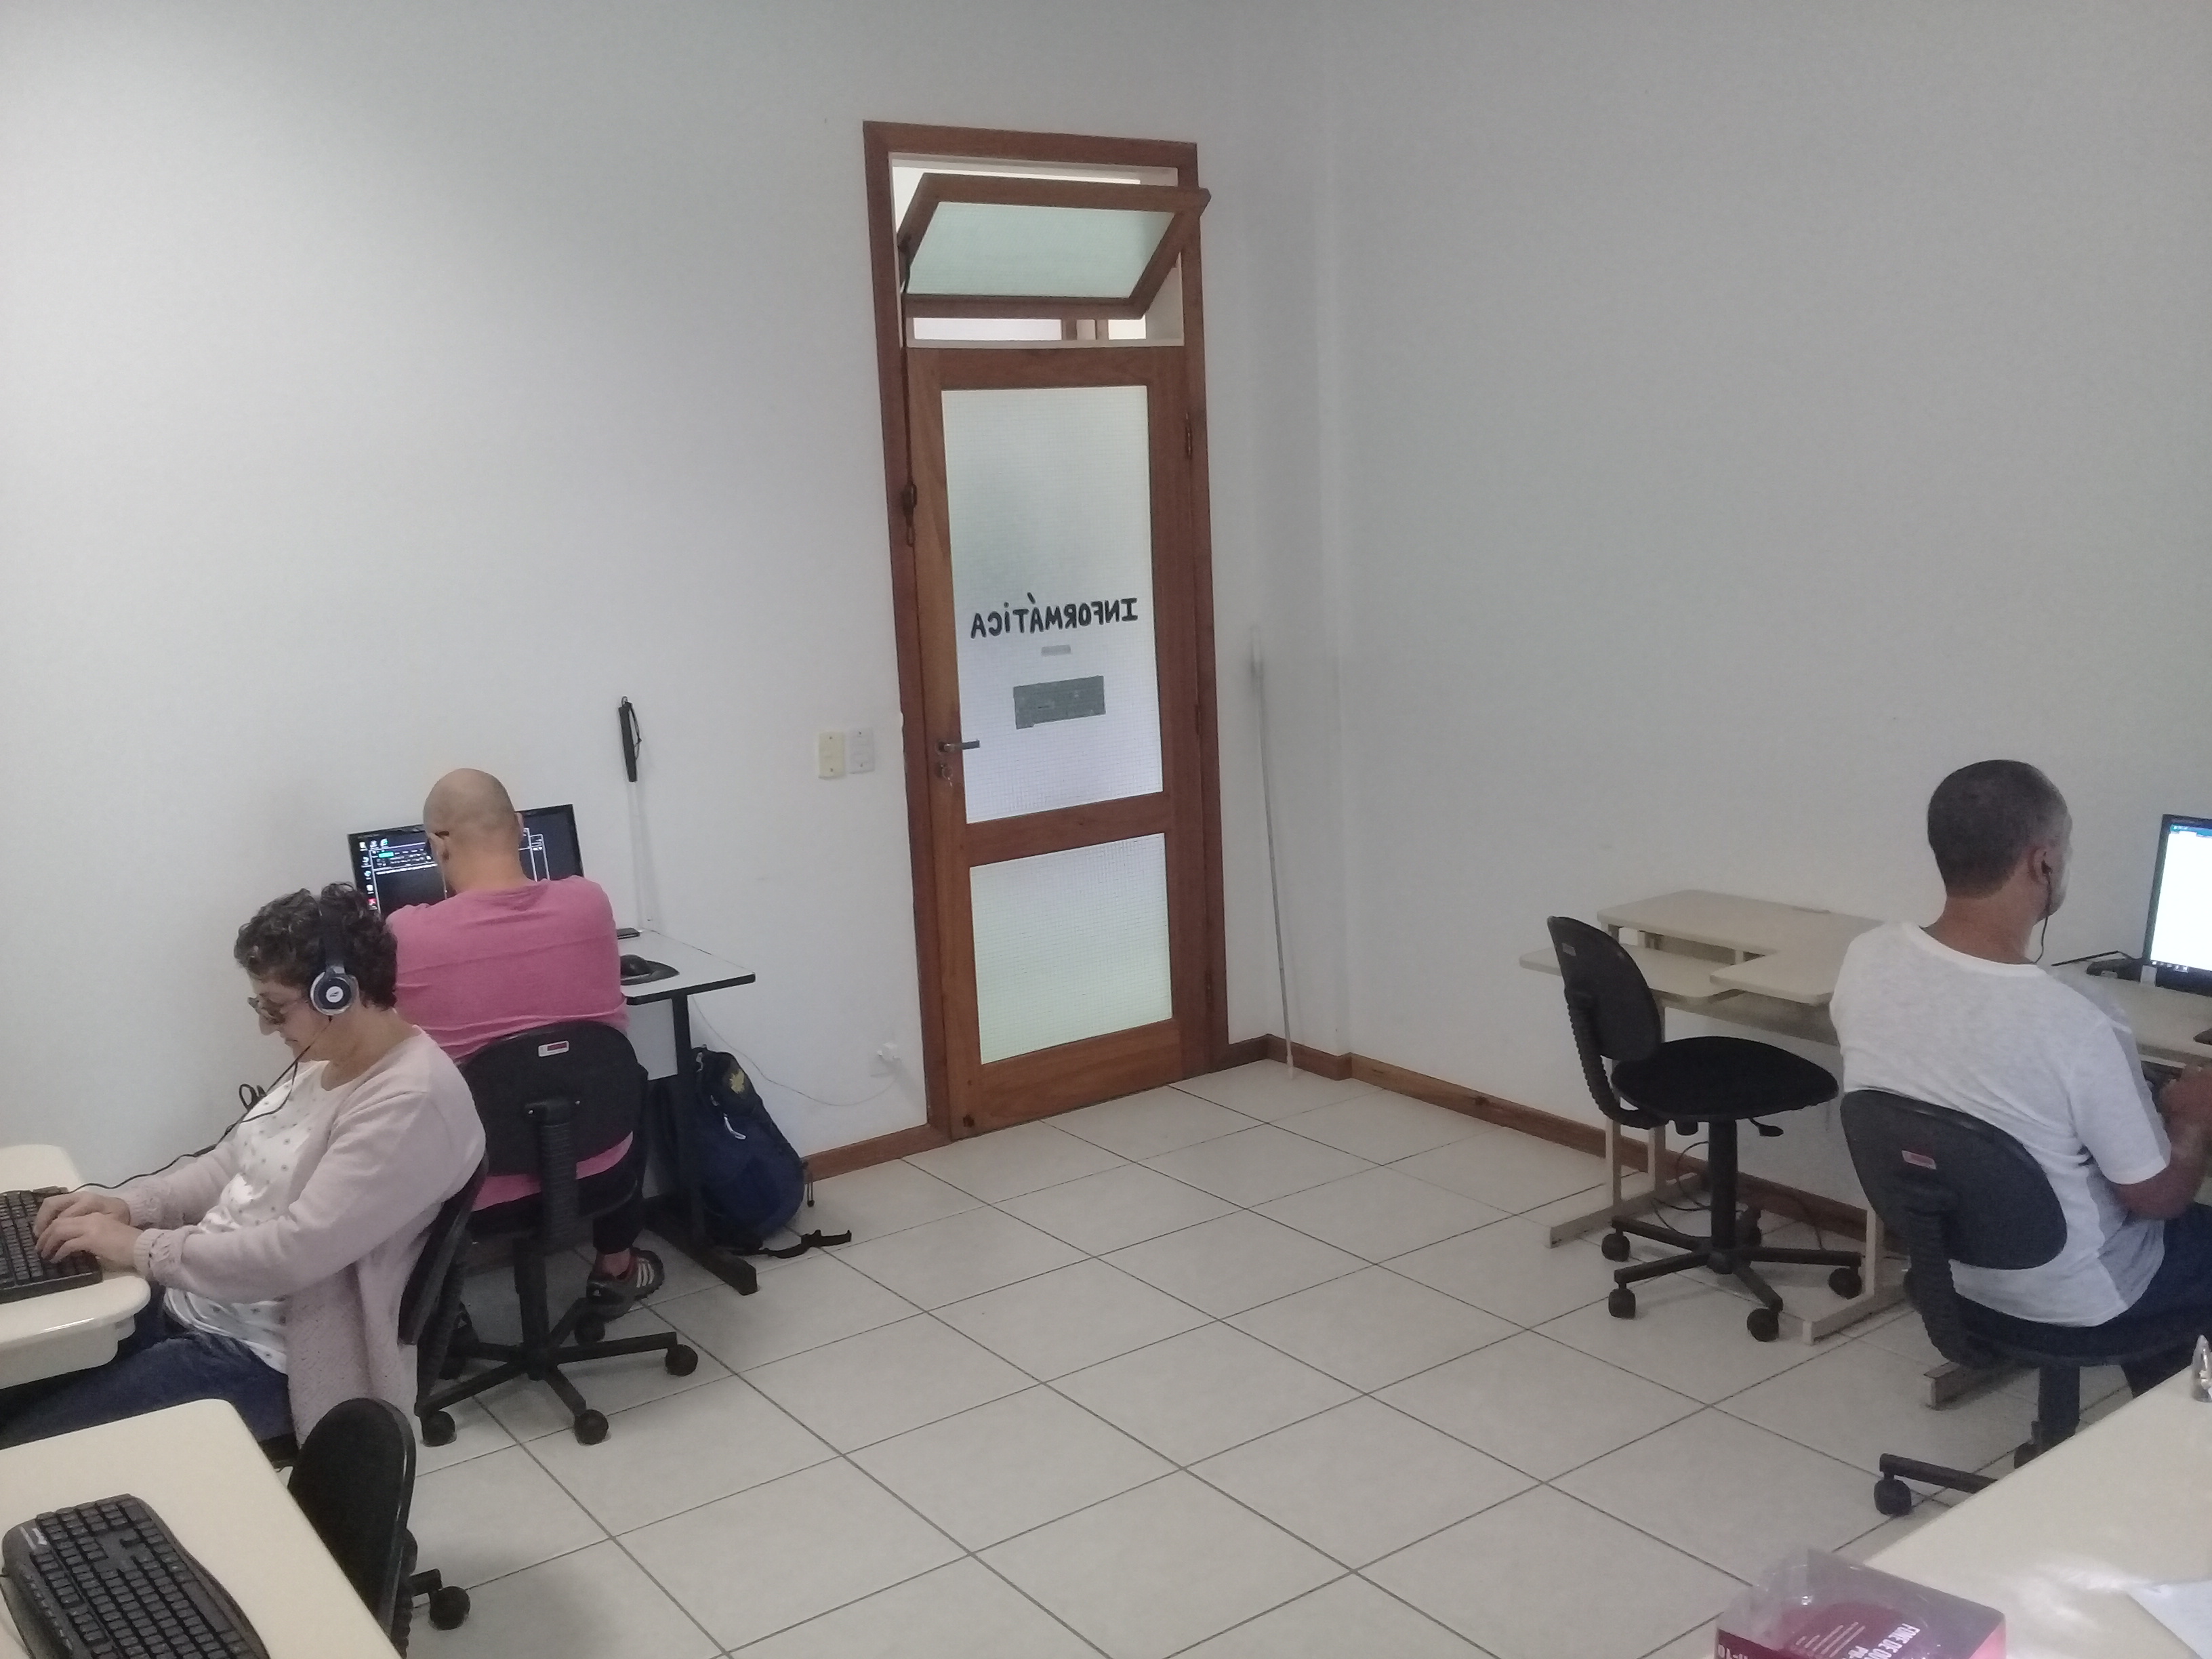 na imagem aparecem os alunos Félix, Rodrigo e Zenilde sentados em frente ao computador. Os três alunos usam fones de ouvido e estão praticando as técnicas de digitação no Word, com o auxílio do leitor de tela.